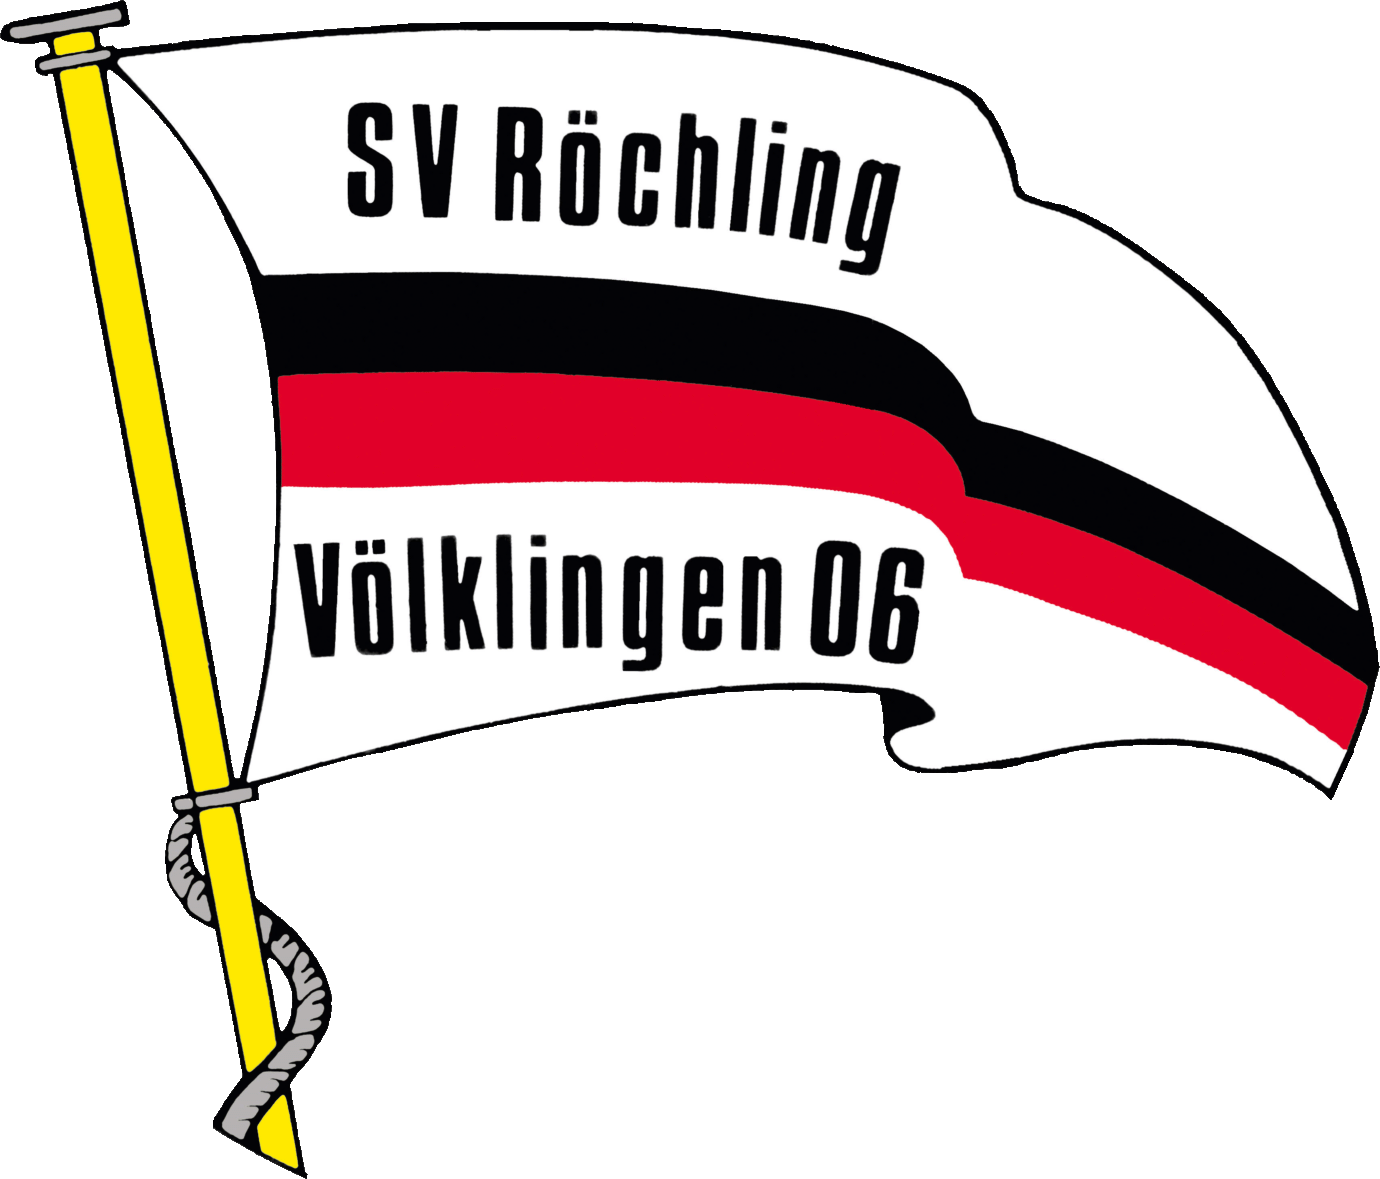 Logo from Röchling Völklingen